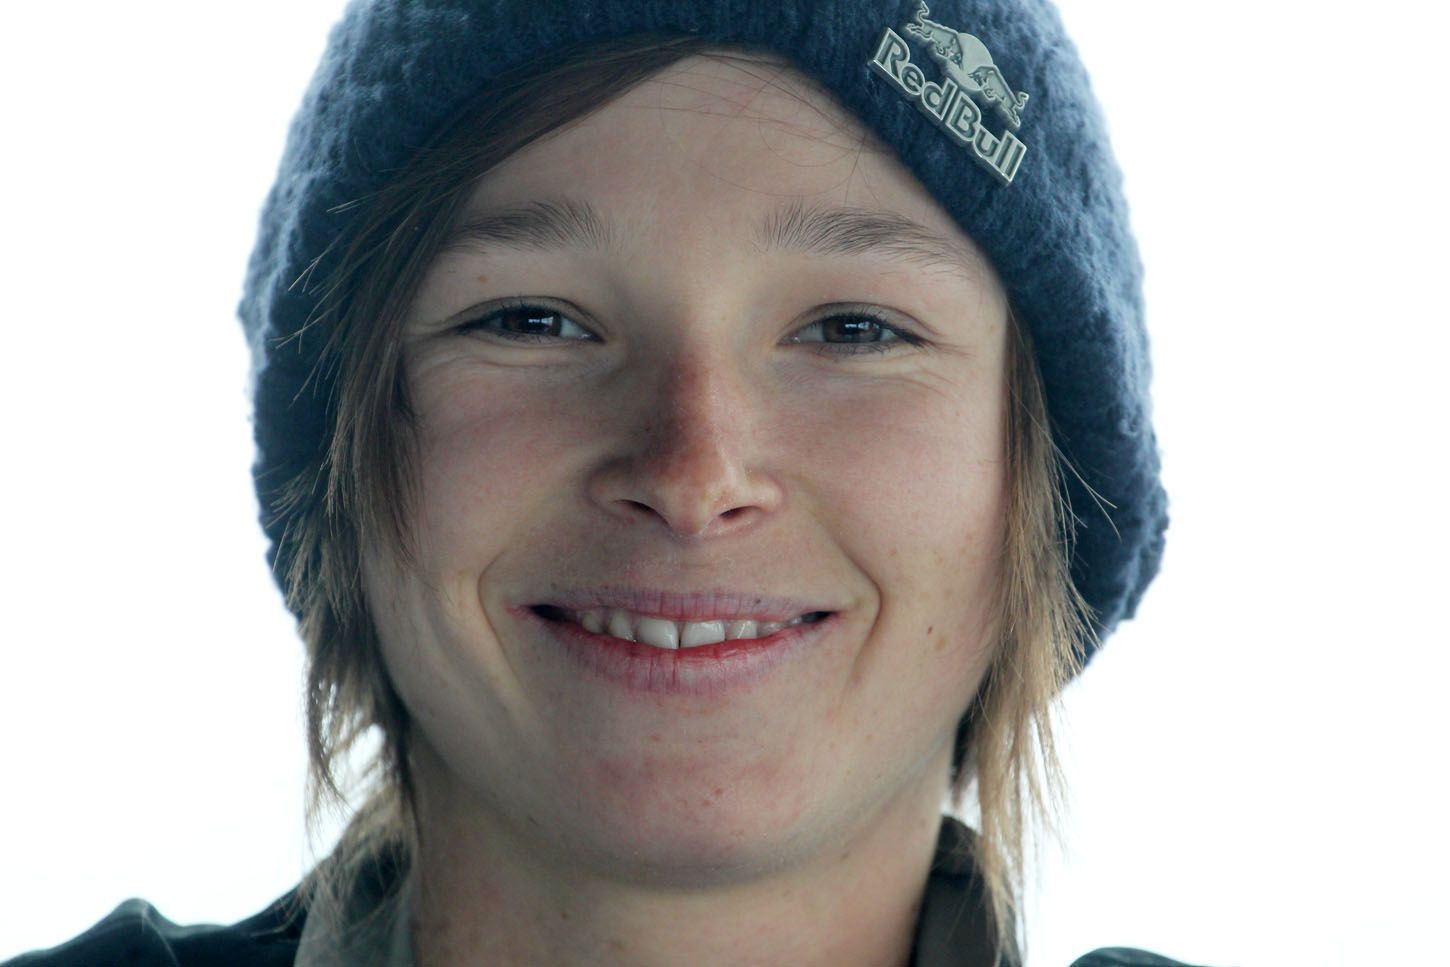 Snowboardistka Šárka Pančochová